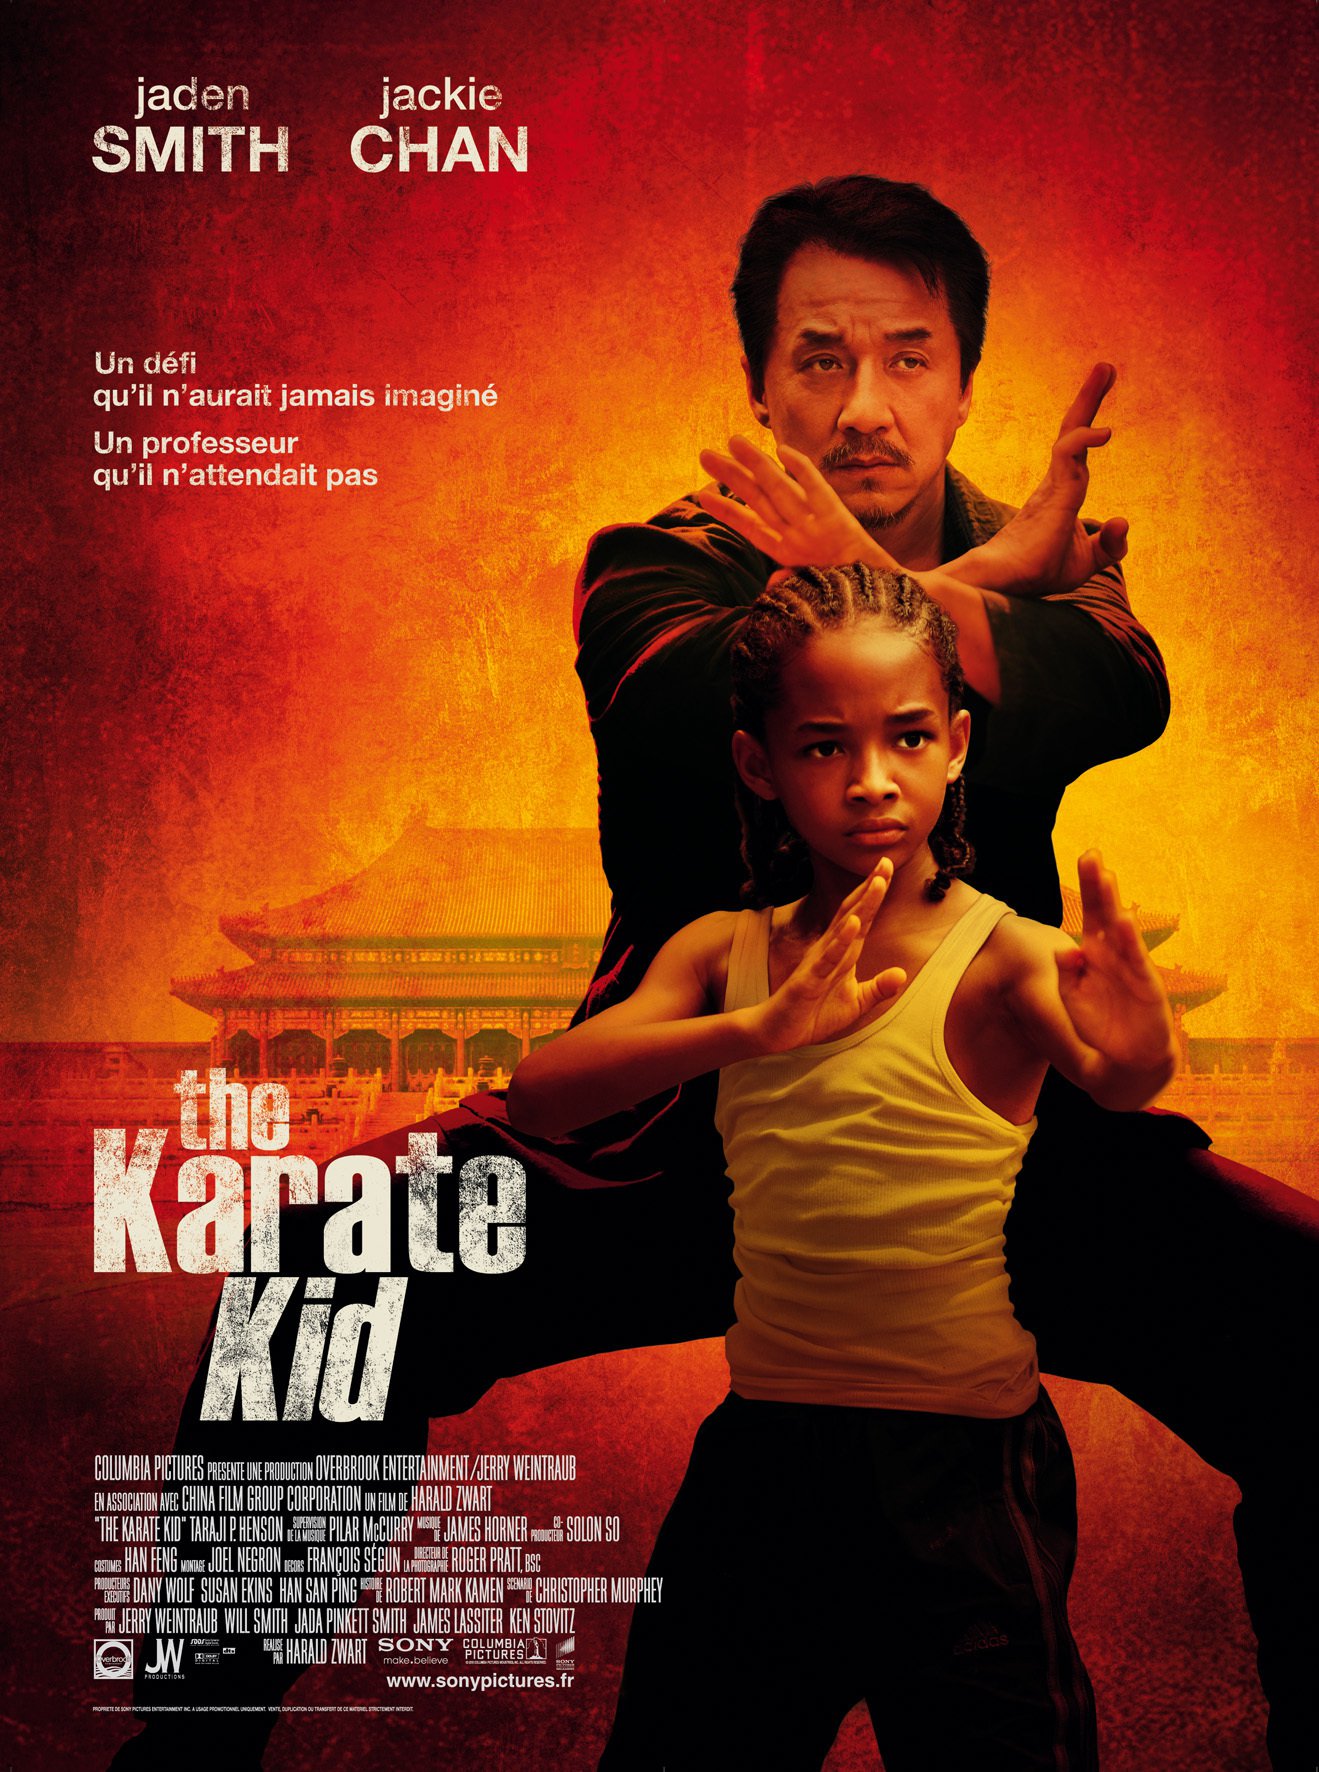 The Karate Kid 2010 sẽ giúp bạn trở lại tuổi thơ và cảm nhận lại một bộ phim cổ điển đầy cảm xúc. Cùng xem lại những pha võ thuật đỉnh cao và những thông điệp thiêng liêng trong bộ phim này. Xem ảnh liên quan để cập nhật các chi tiết mới nhất về bộ phim này và hòa mình vào những kỷ niệm tuyệt vời của tuổi thơ.